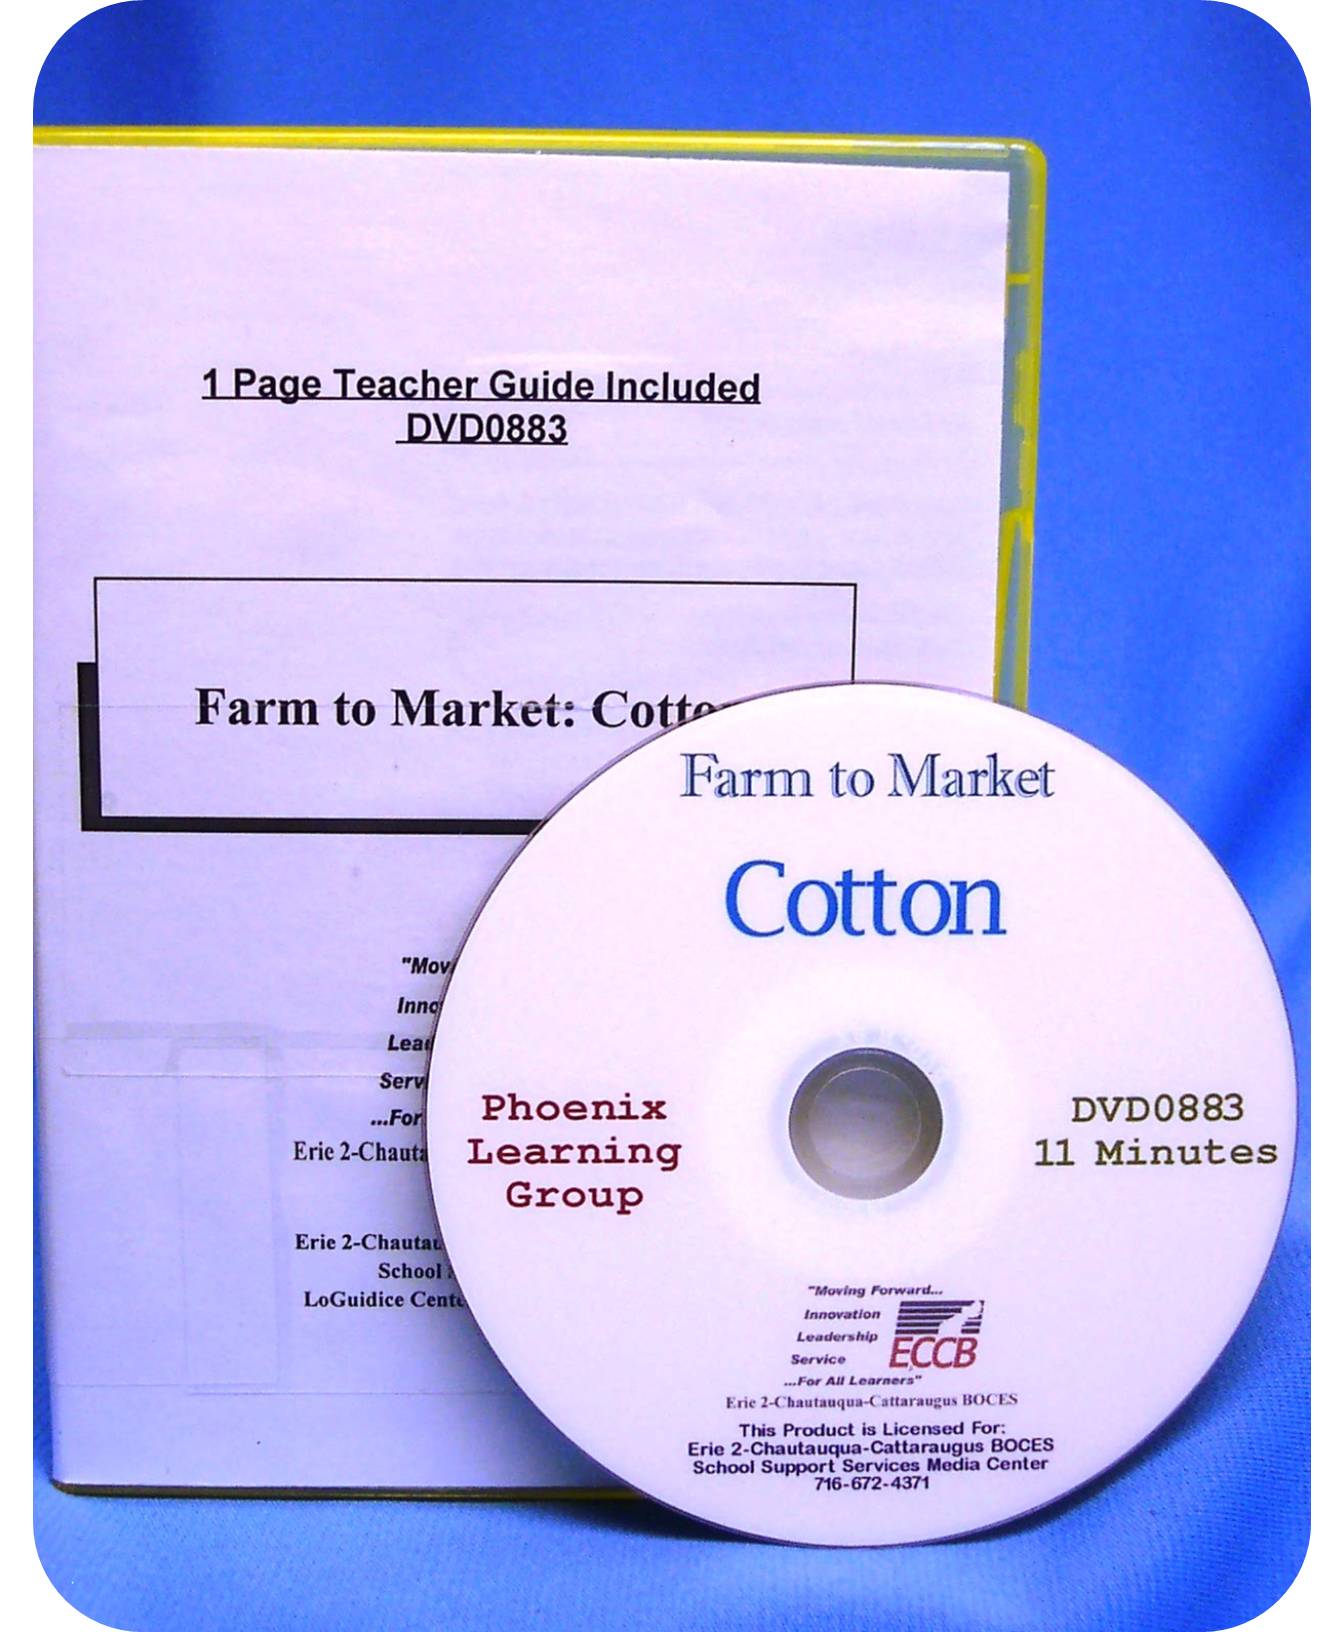 Farm to Market: Cotton